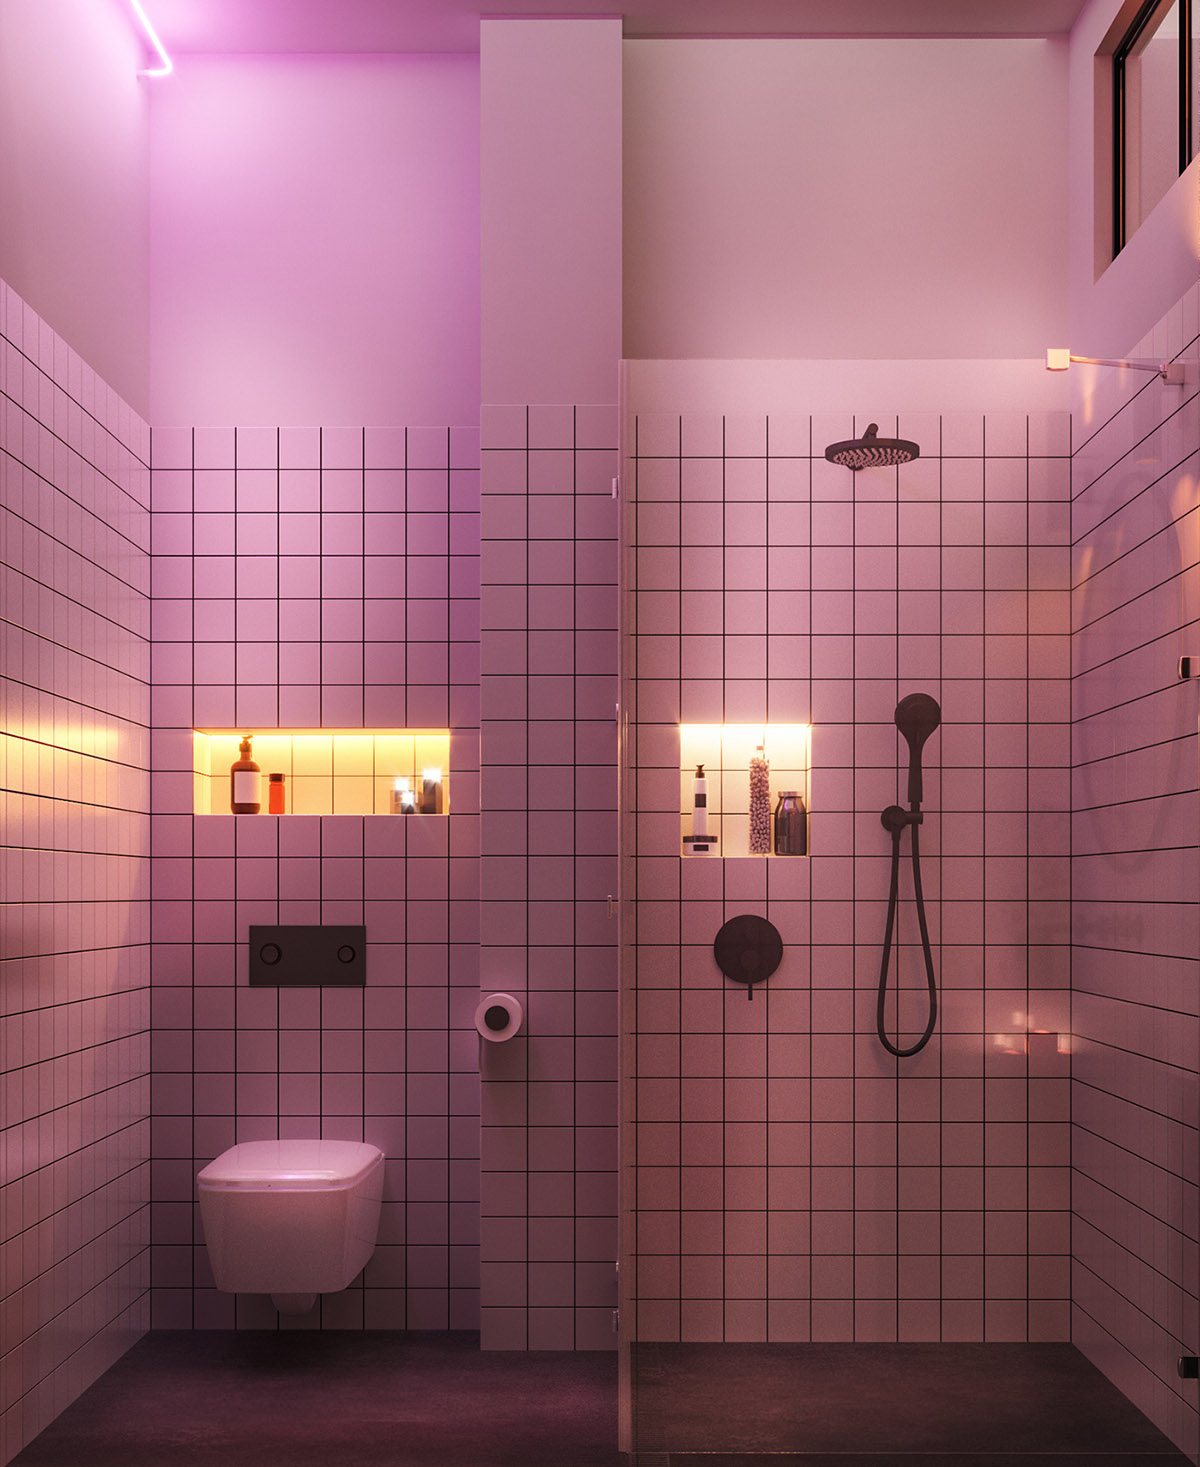 Hệ thống đèn LED cũng được sử dụng tối đa để chiếu sáng những chiếc kệ âm tường tiện ích. Bồn toilet là thiết kế gắn tường để giải phóng diện tích mặt sàn, tận dụng tối đa bức tường đáp ứng nhu cầu tiết kiệm không gian của gia chủ.